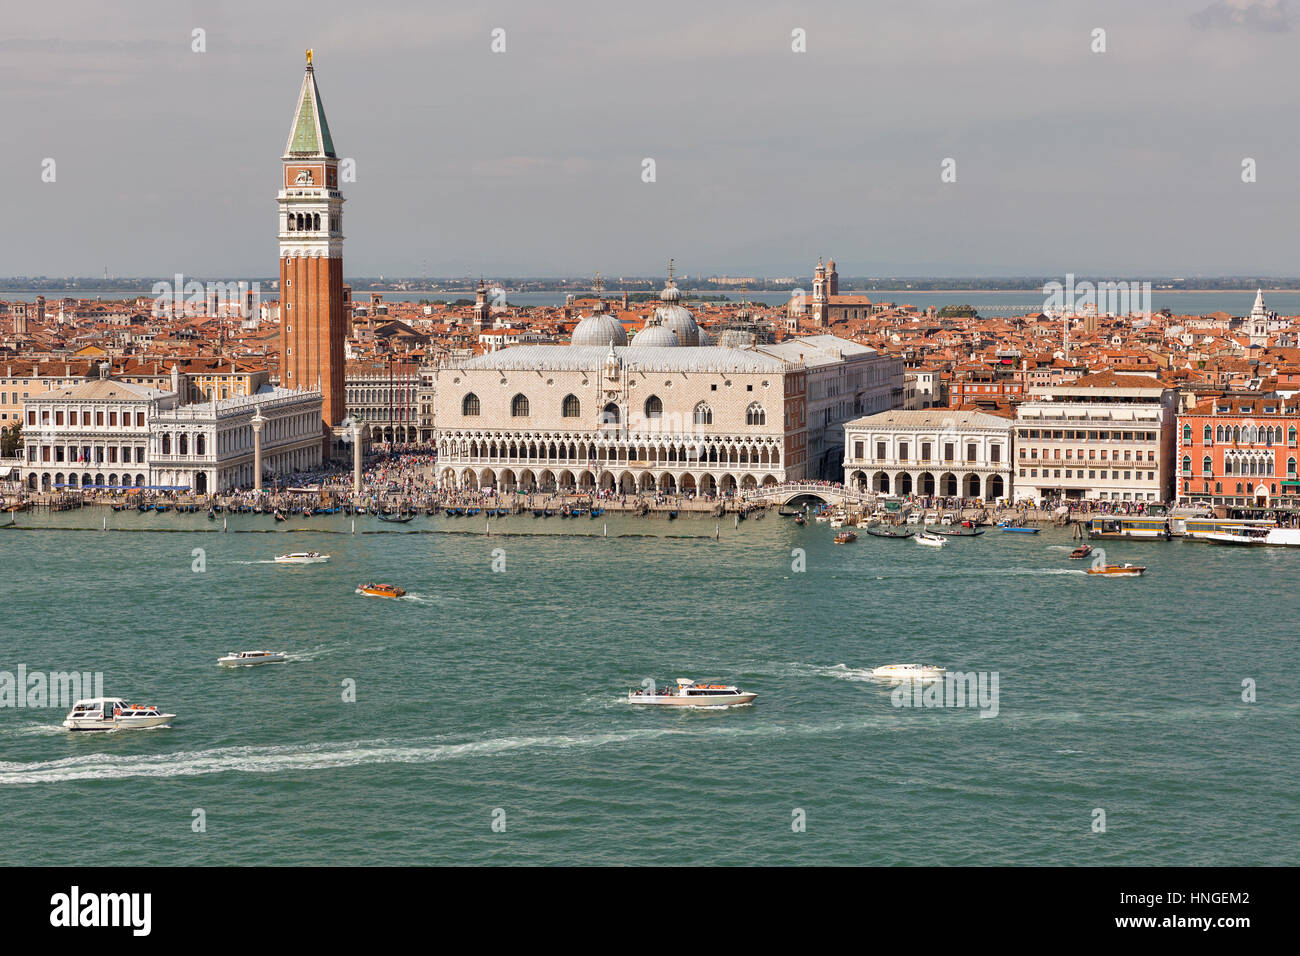 Vue aérienne sur la lagune de Venise, en Italie avec le Palais des Doges, Le Campanile et la Place de San Marco. Banque D'Images